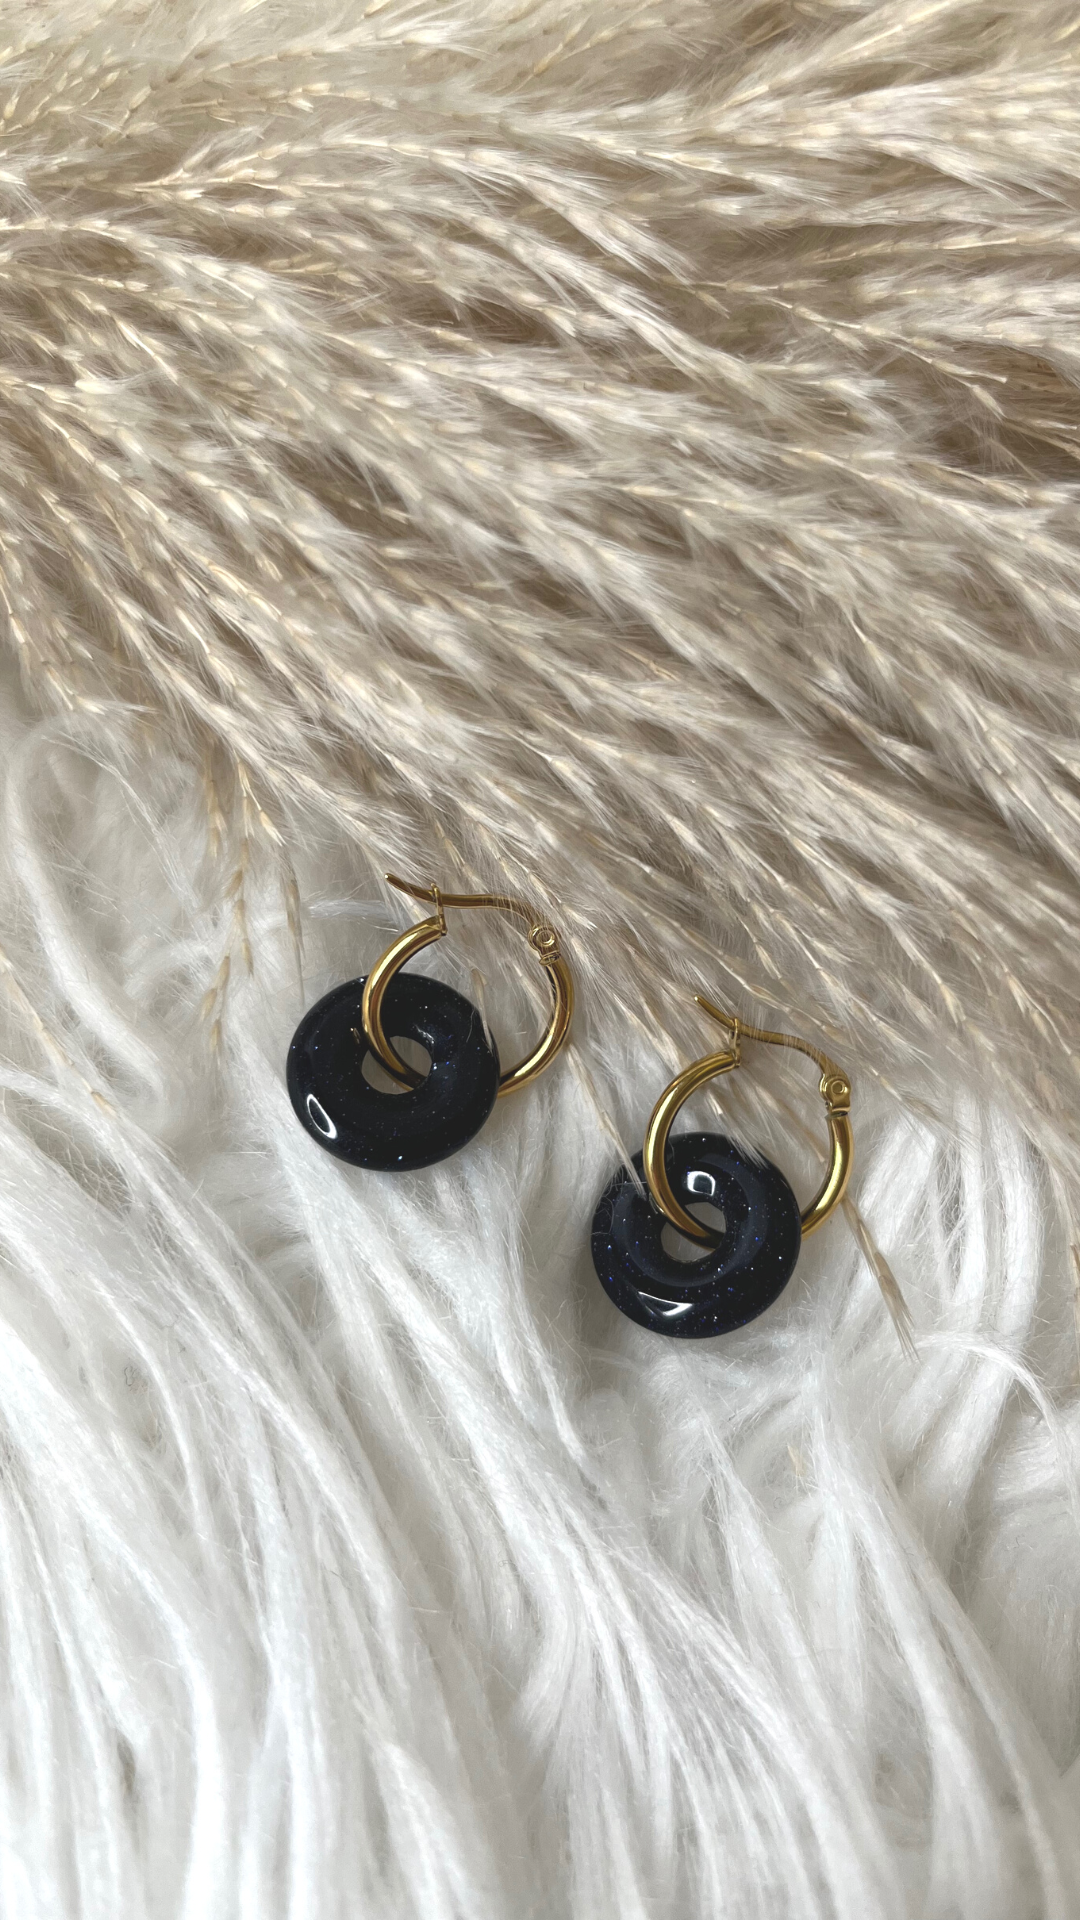 Belleus Crystalline earrings - Natural Blue Sandstone crystal with 18K Gold-plated, stainless-steel hoop earrings